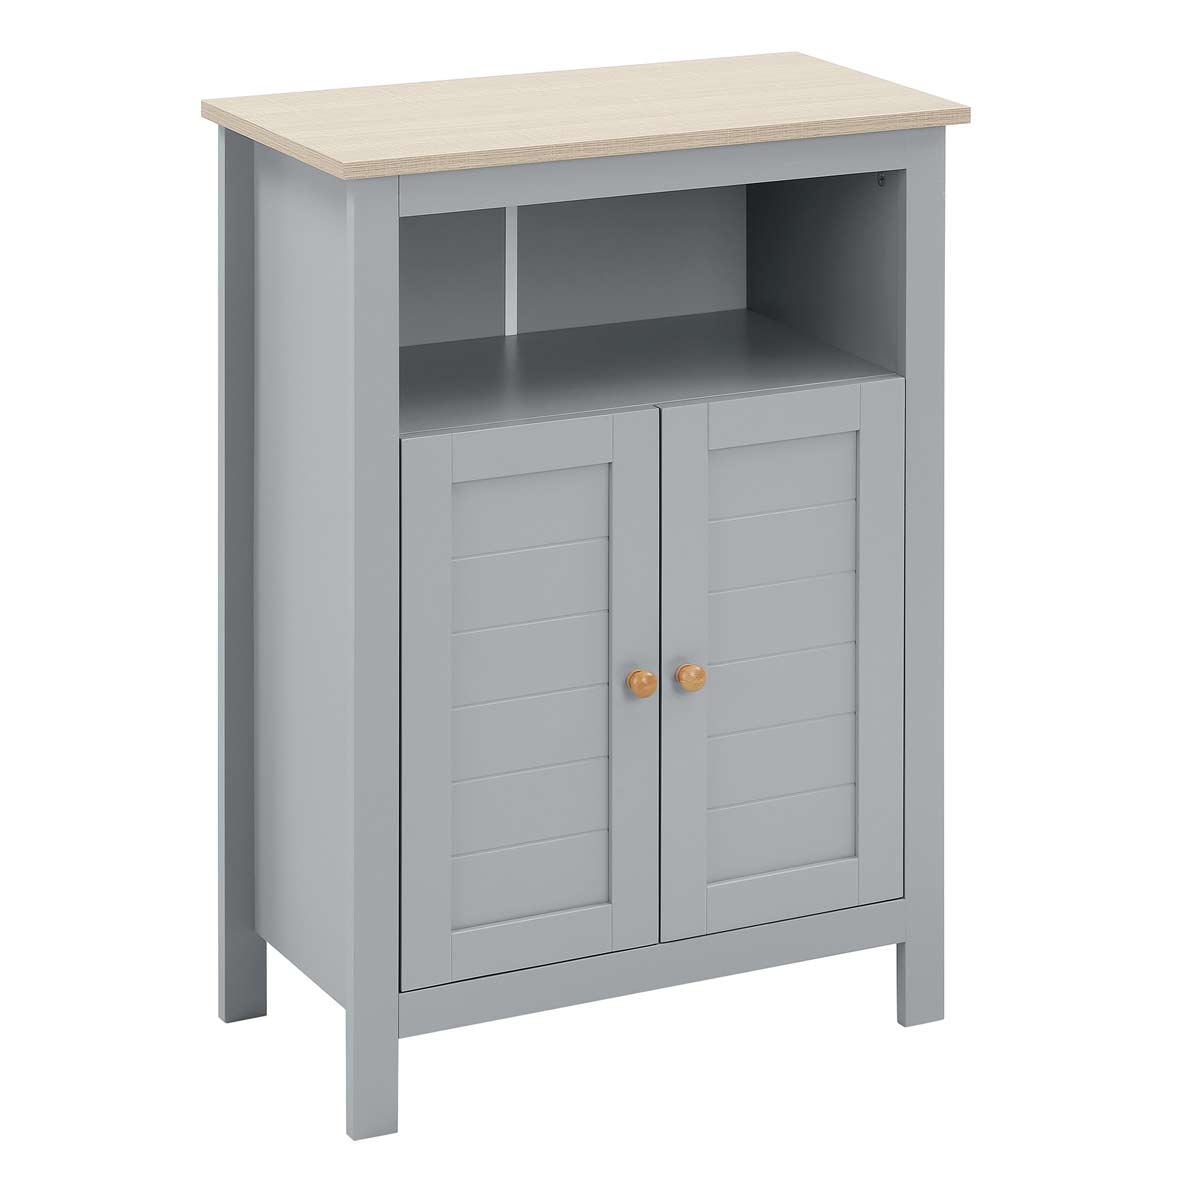 Kleankin Bathroom Floor Storage Cabinet, Standing Unit With Doors Adjustable Shelf - Grey